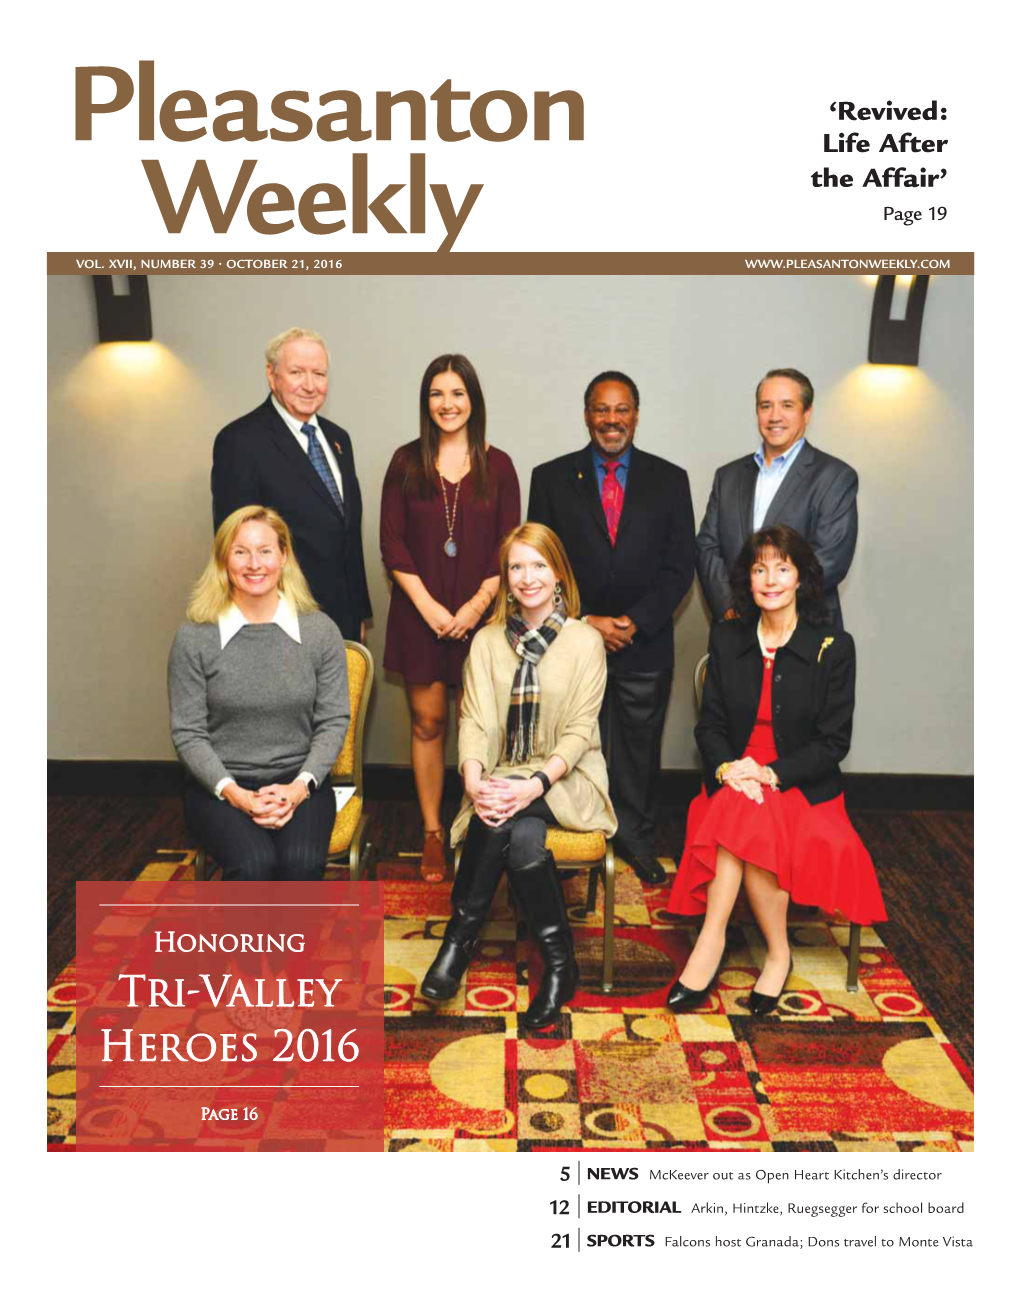 Tri-Valley Heroes 2016